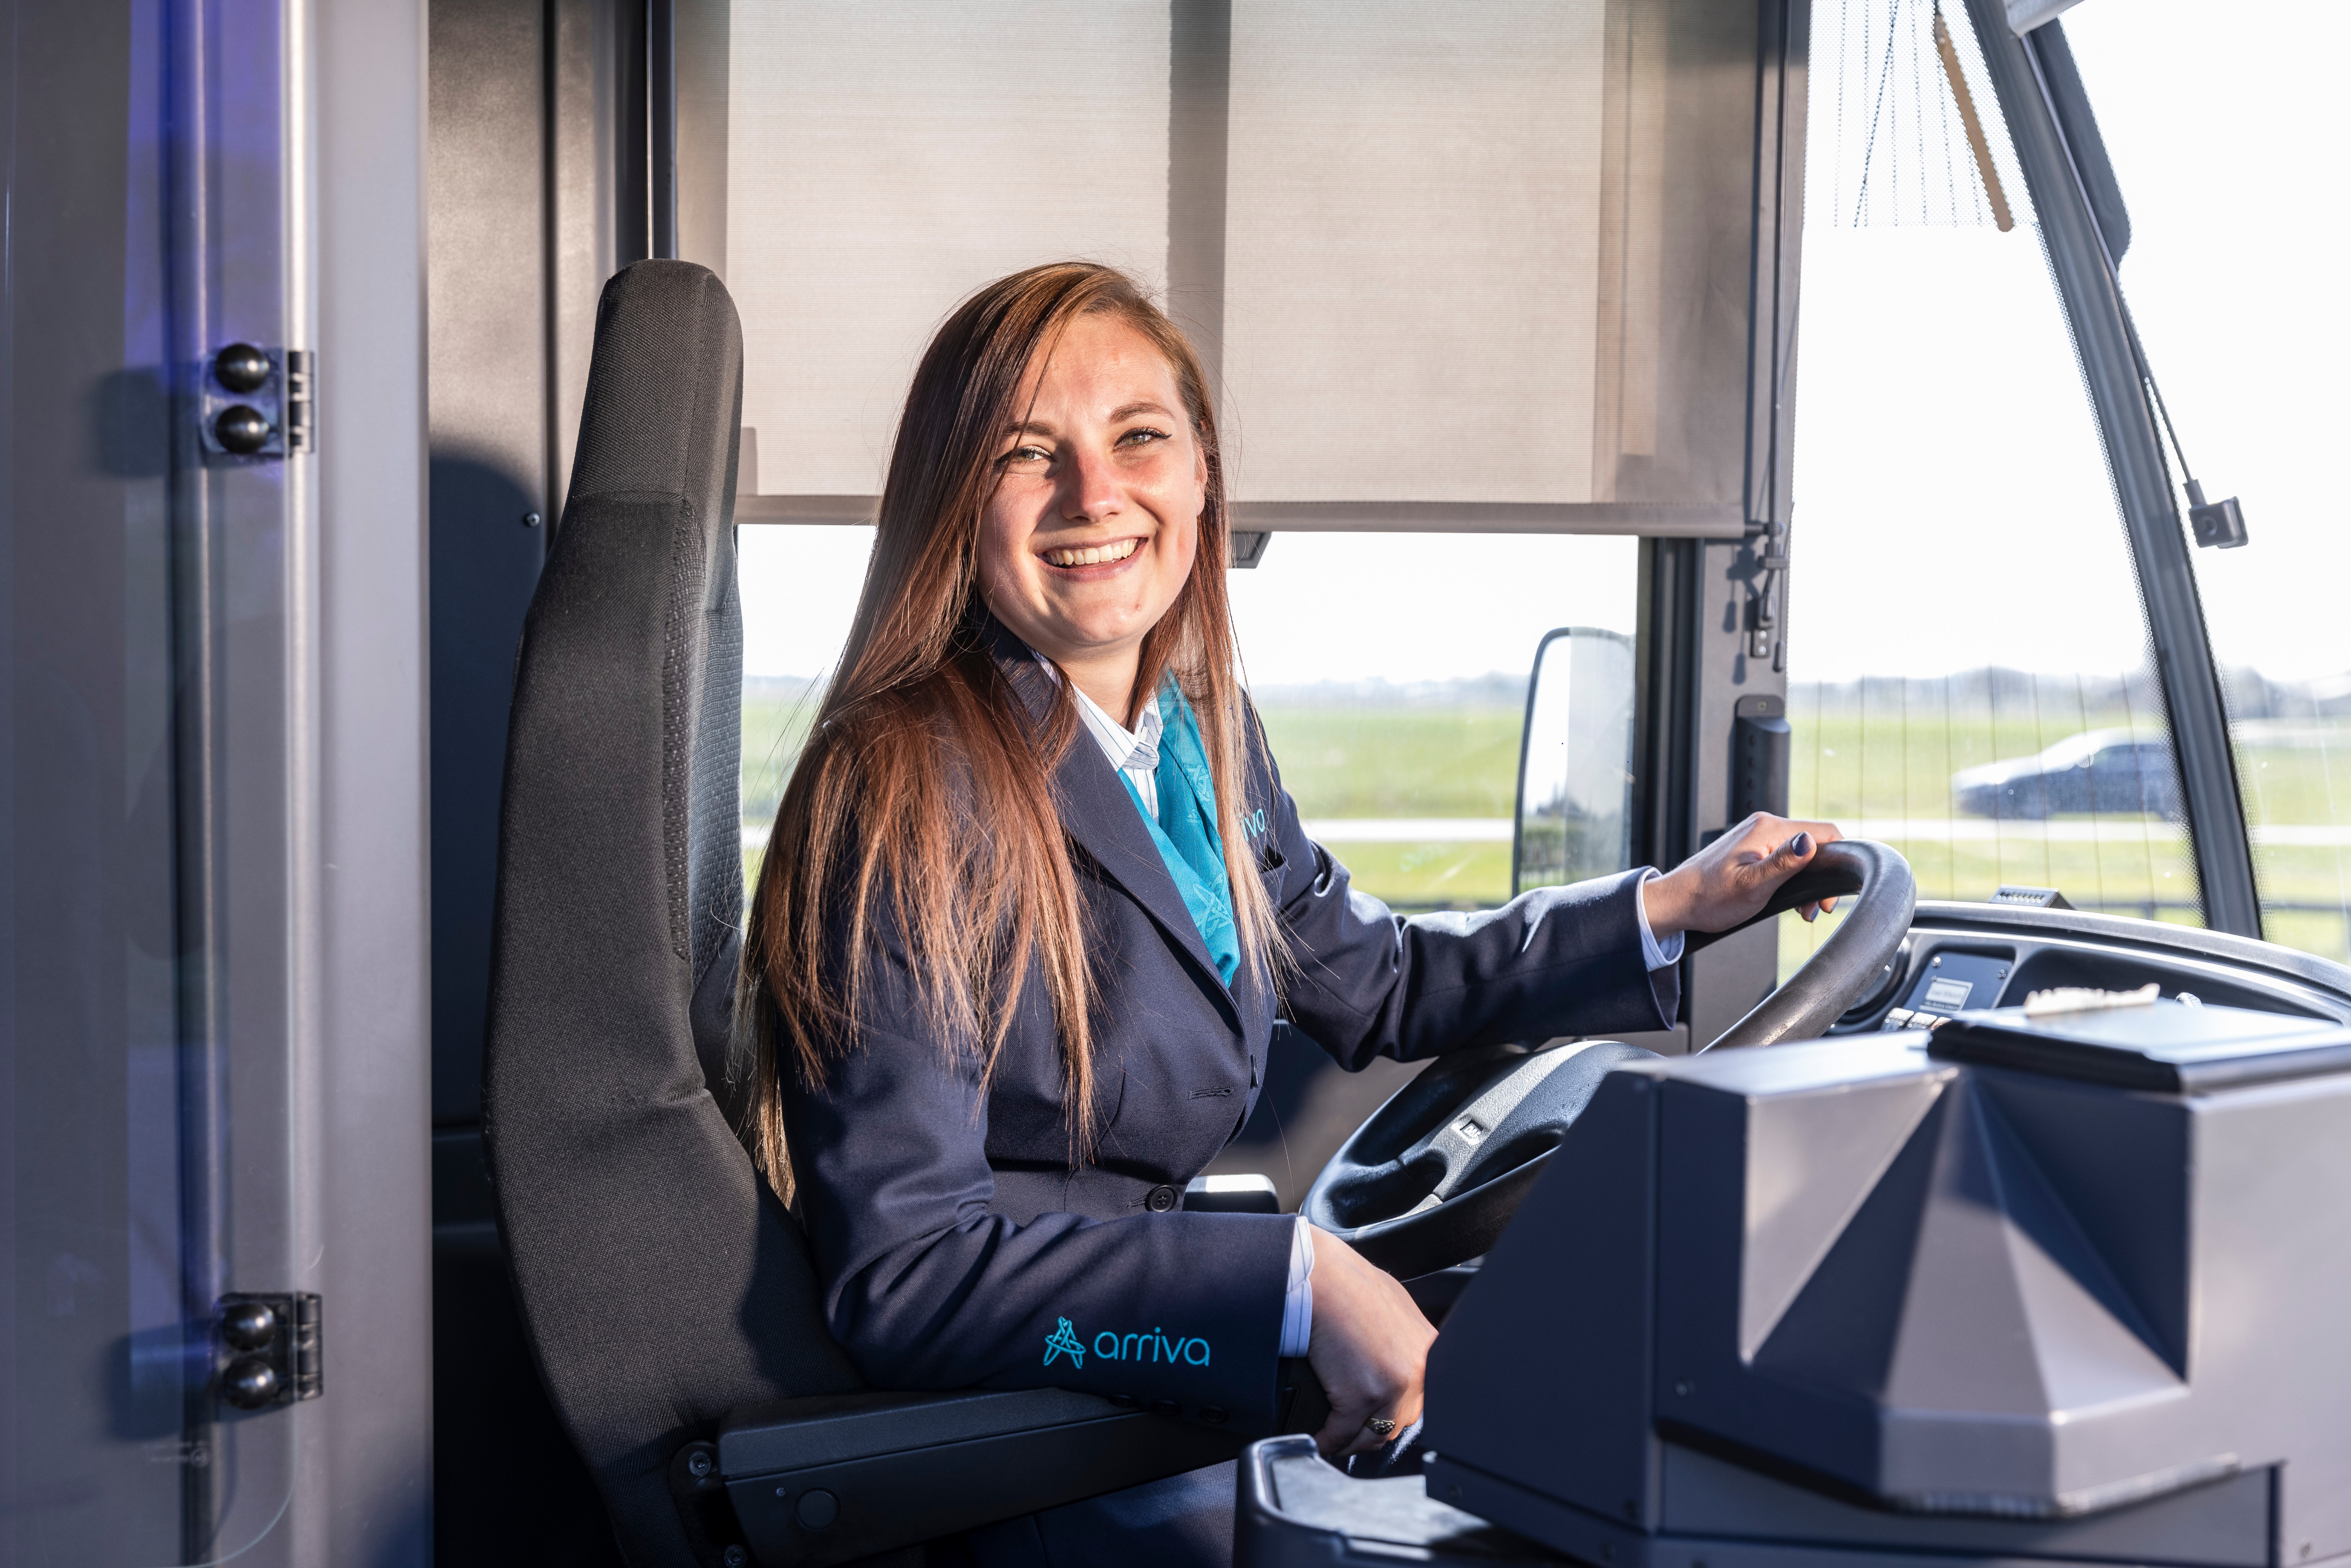 Vrouwelijke buschauffeur met lang haar en in uniform zit lachend achter het stuur van haar Arriva-bus.